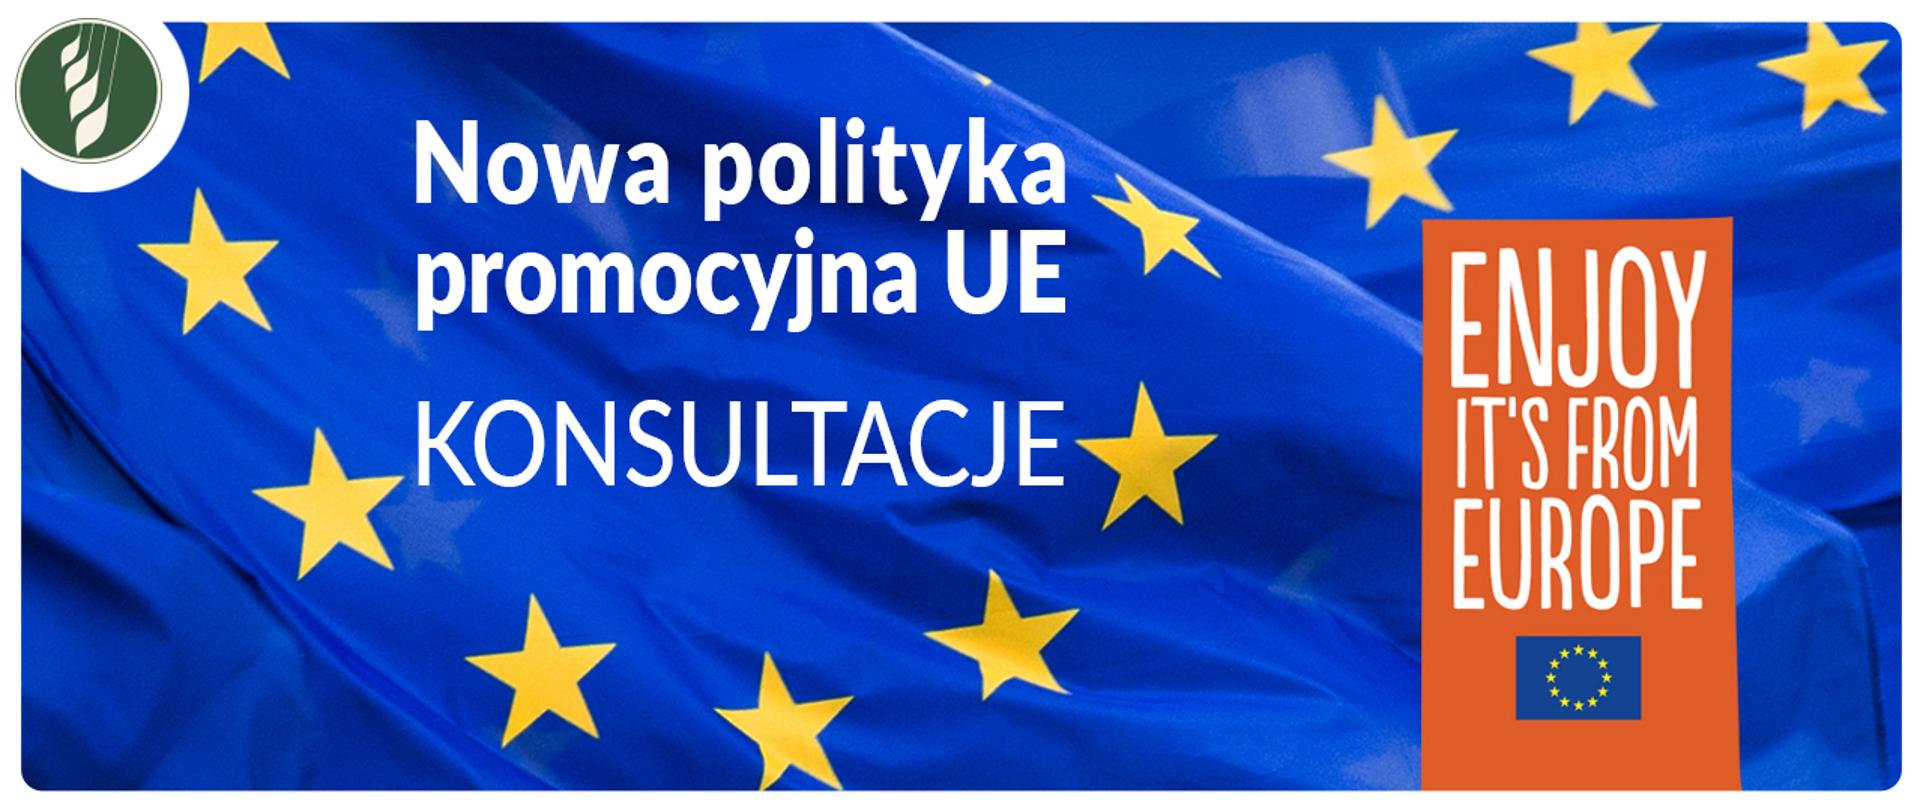 Nowa polityka UE - konsultacje